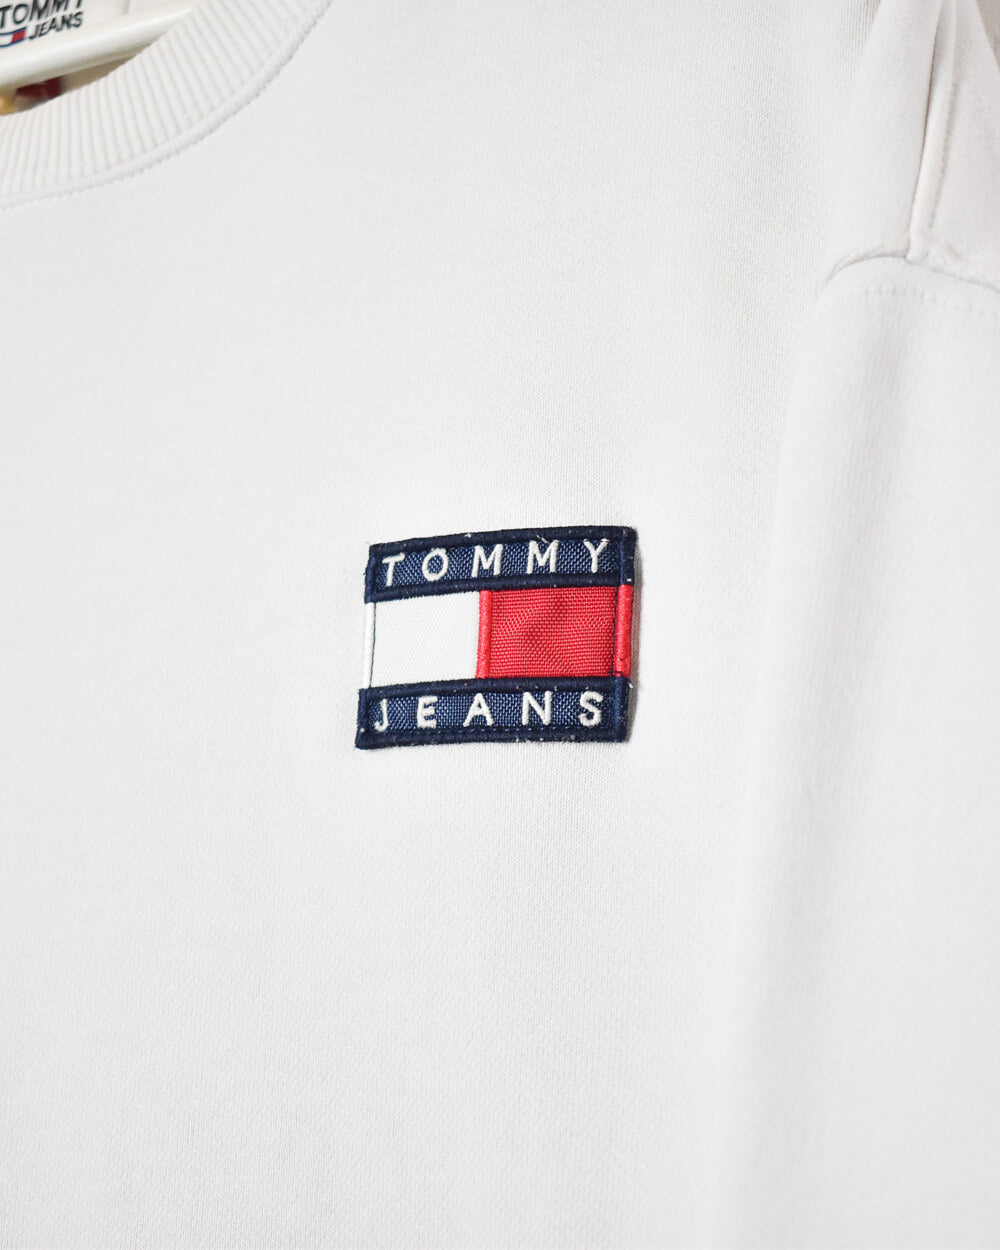 White Tommy Jeans Women's Sweatshirt - Large